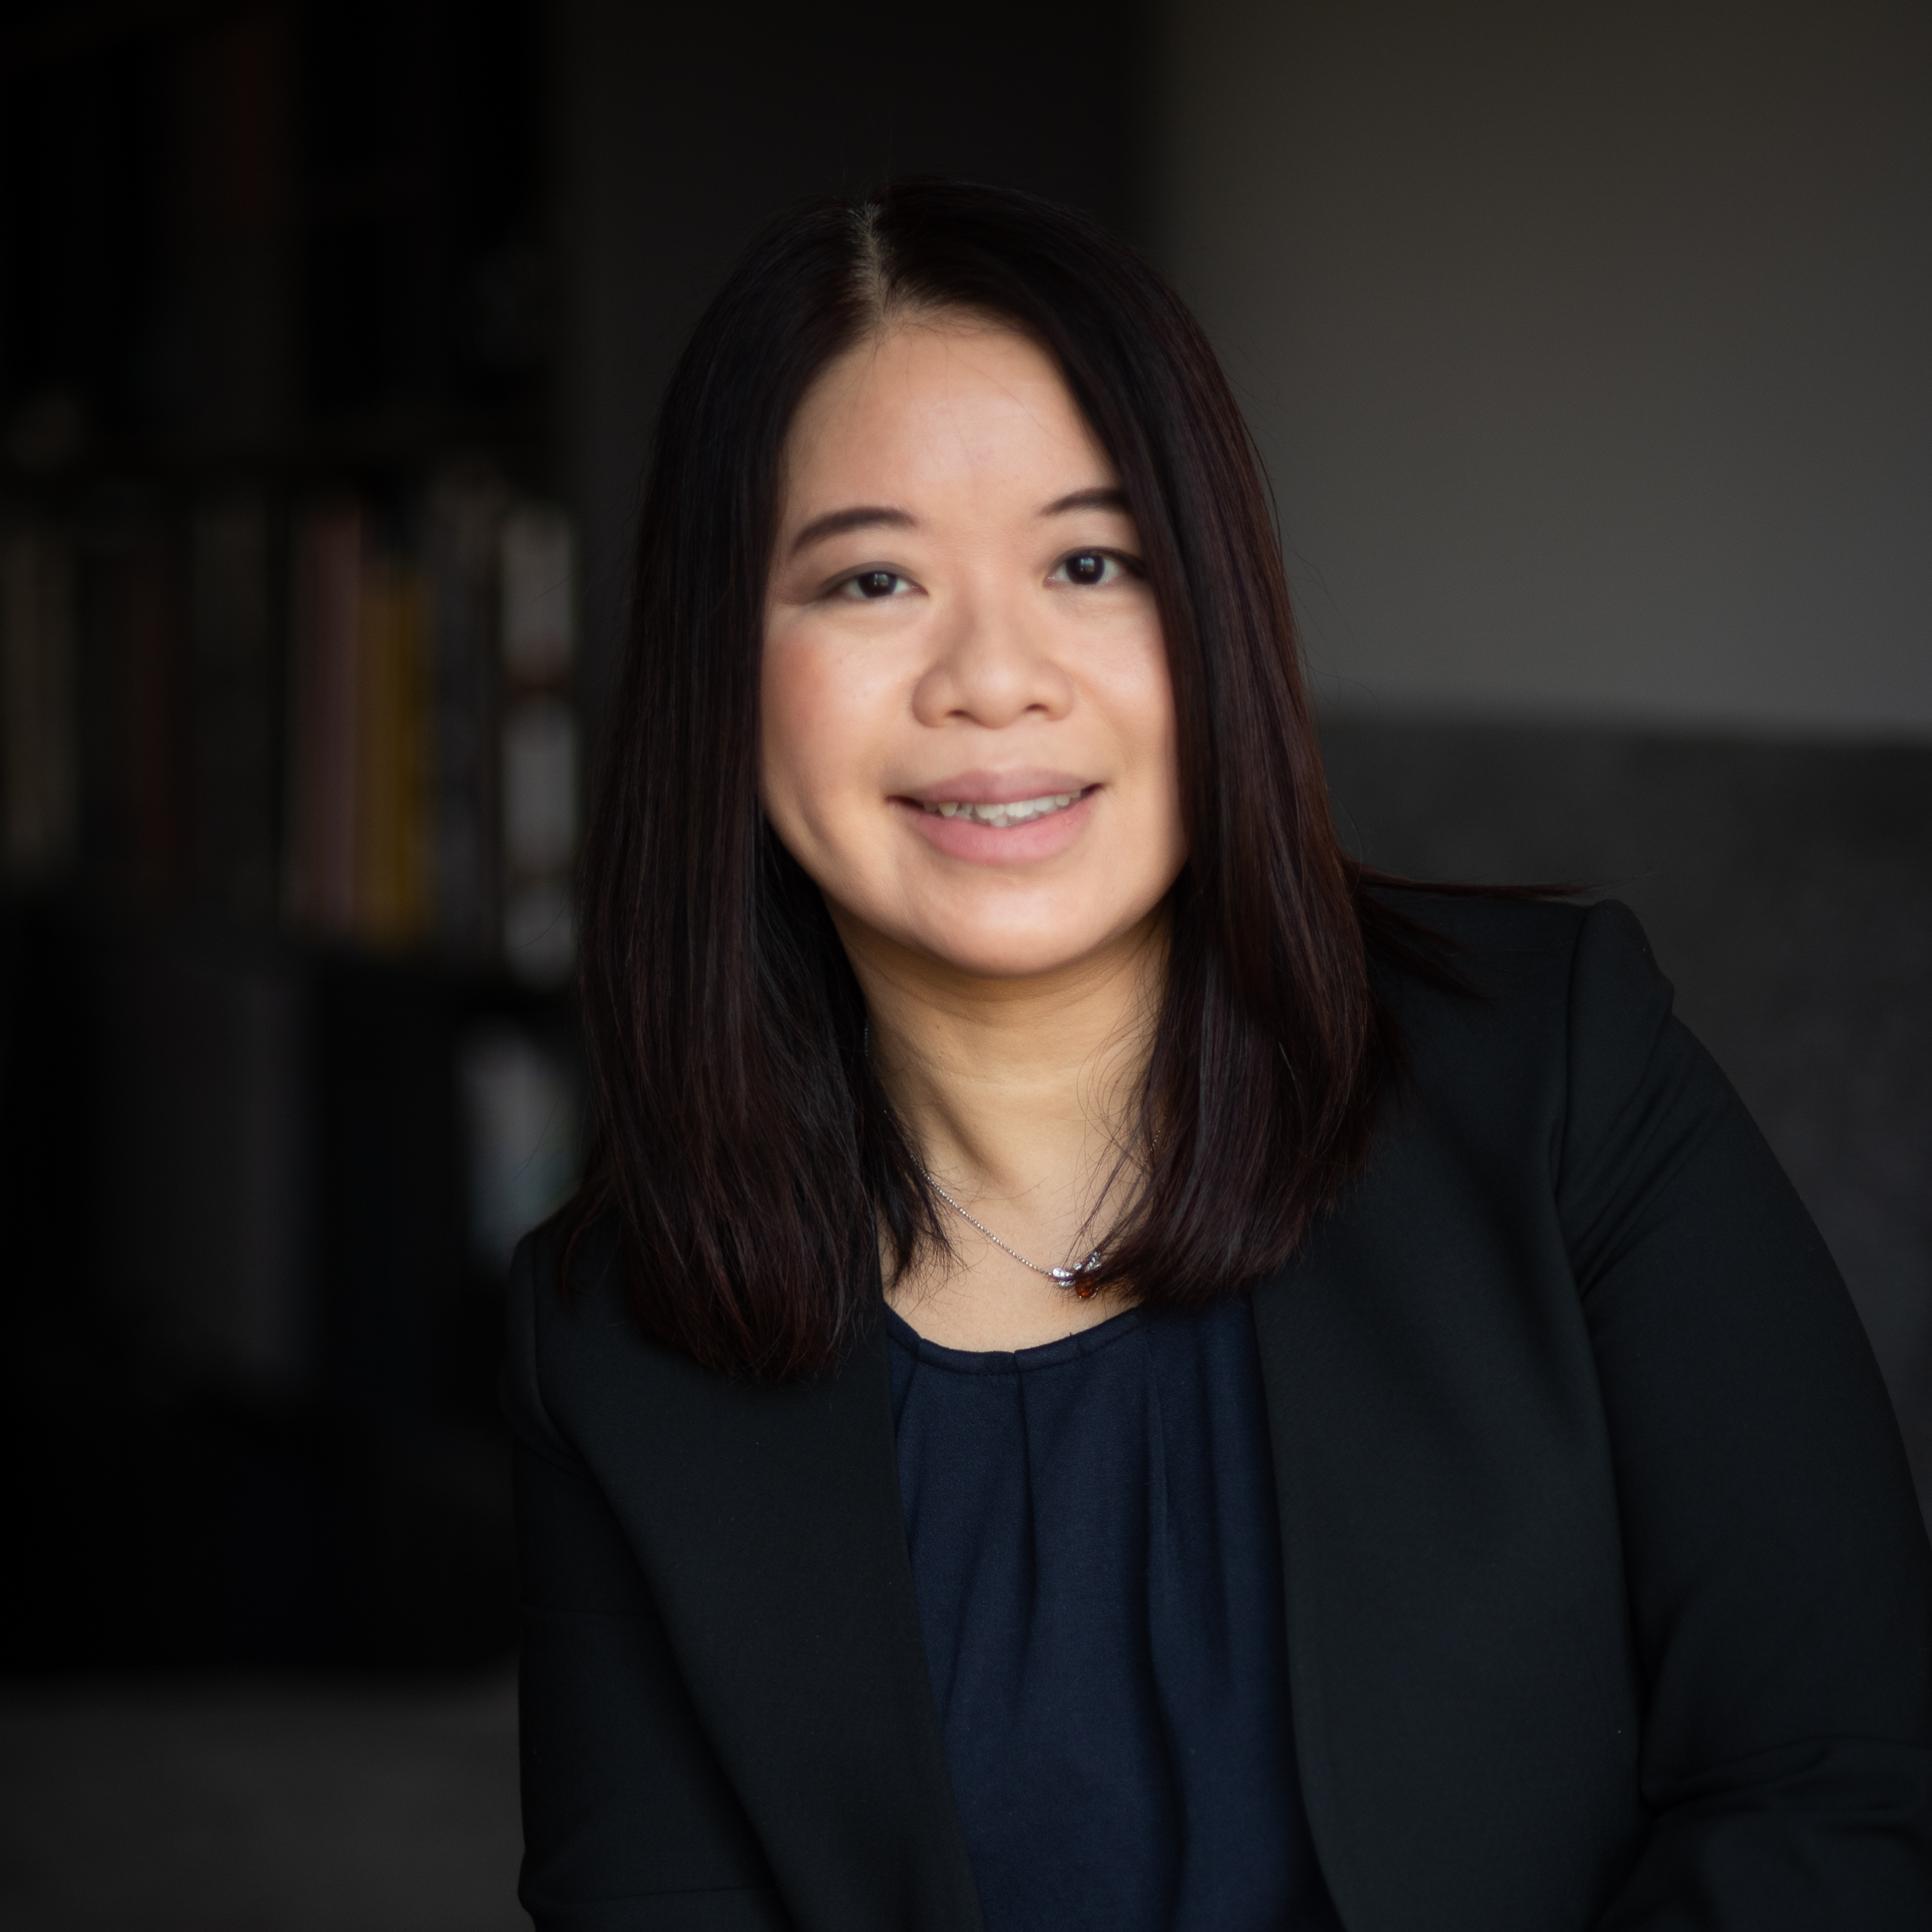 Theodora Lau, Founder of Unconventional Ventures